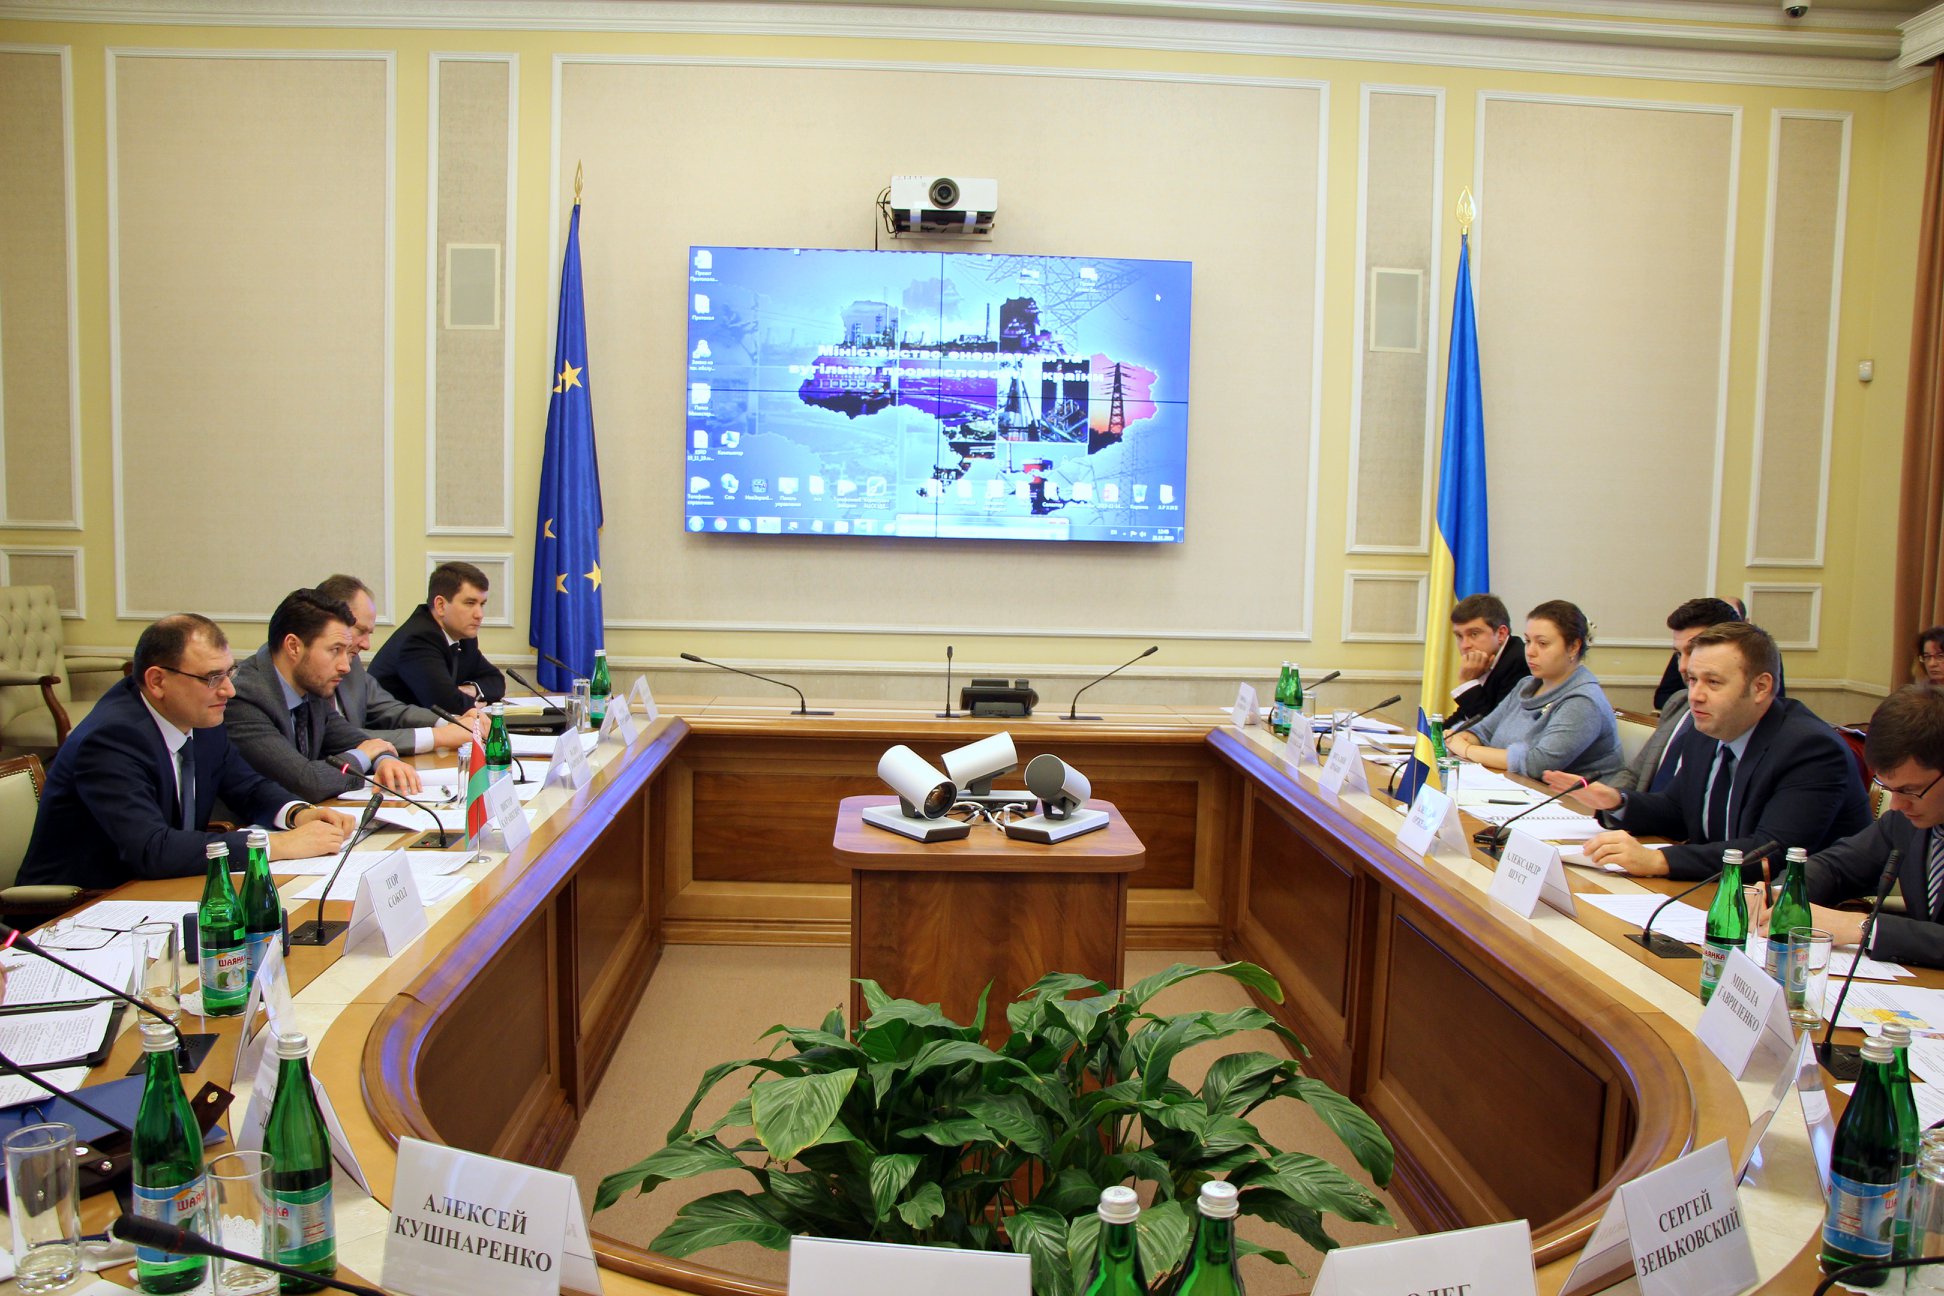 Кабинет министров Украины заинтересован в импорте электроэнергии, которая будет вырабатываться на Белорусской АЭС.